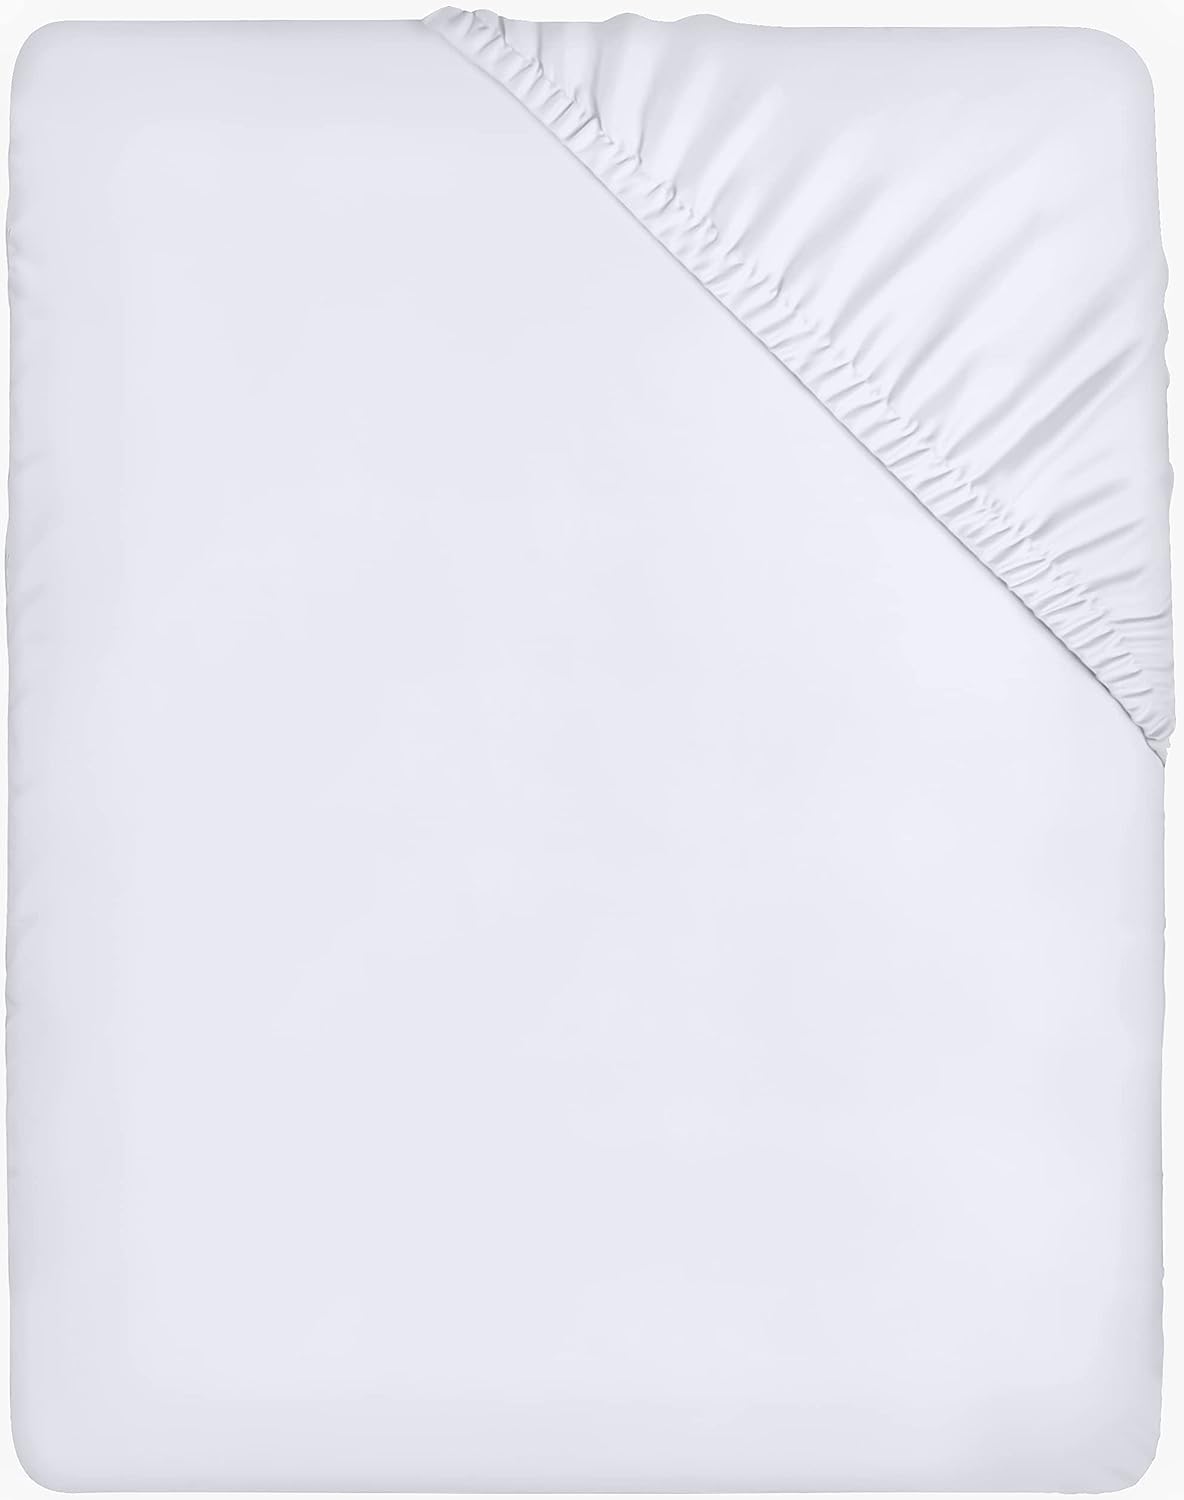 grand choix Utopia Bedding Drap Housse - Blanc, 120 x 200 cm - Coupes de 35 cm pour Matelas épais - Microfibre brossée THVMRcoSy meilleure vente